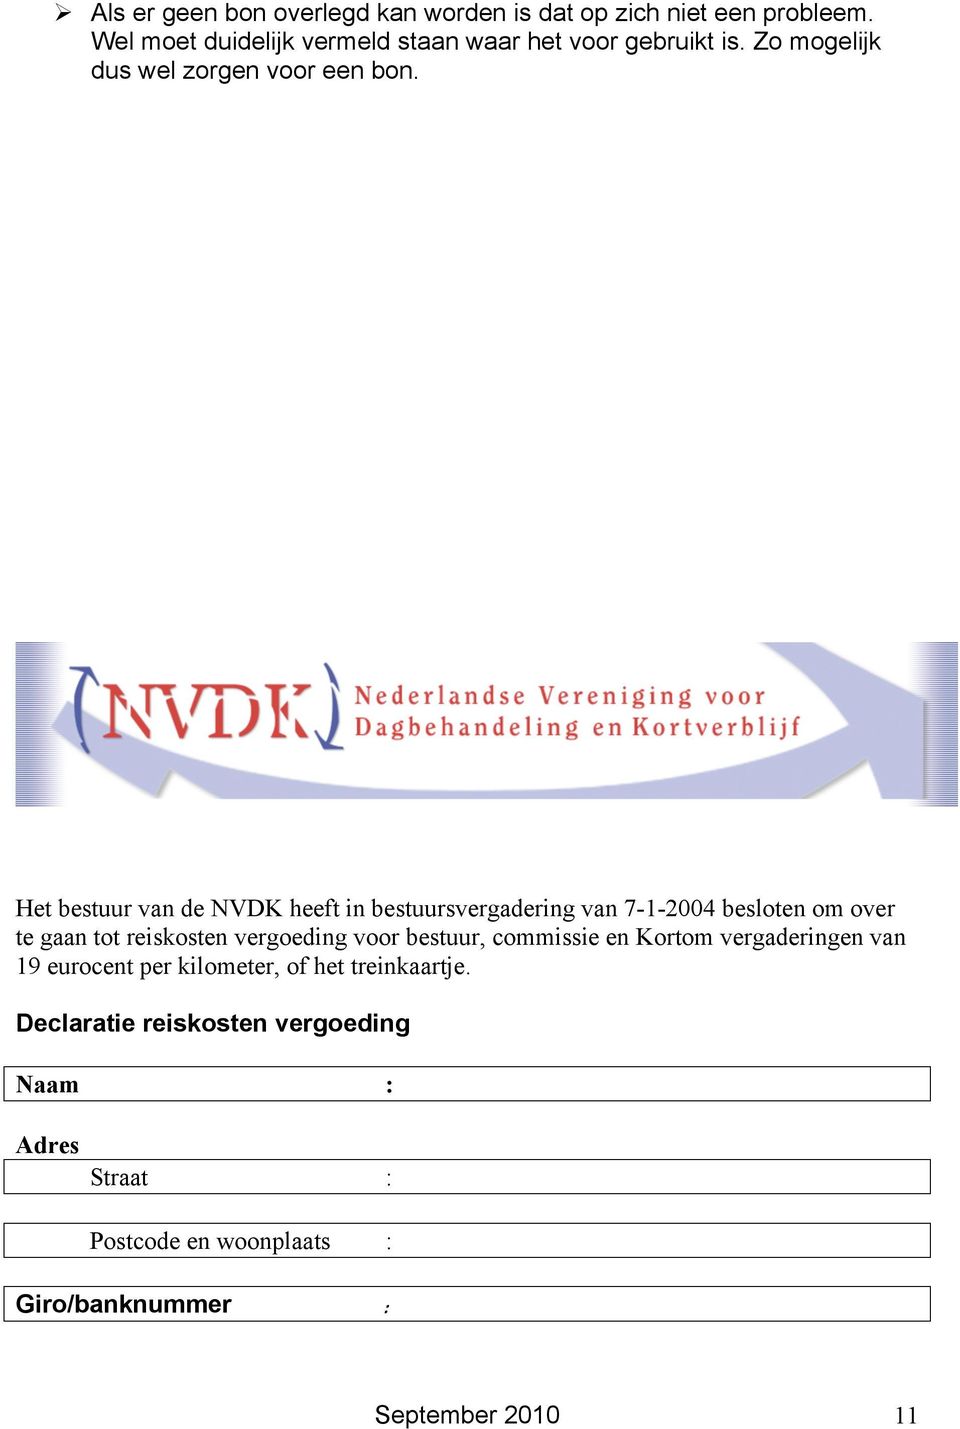 Het bestuur van de NVDK heeft in bestuursvergadering van 7-1-2004 besloten om over te gaan tot reiskosten vergoeding voor